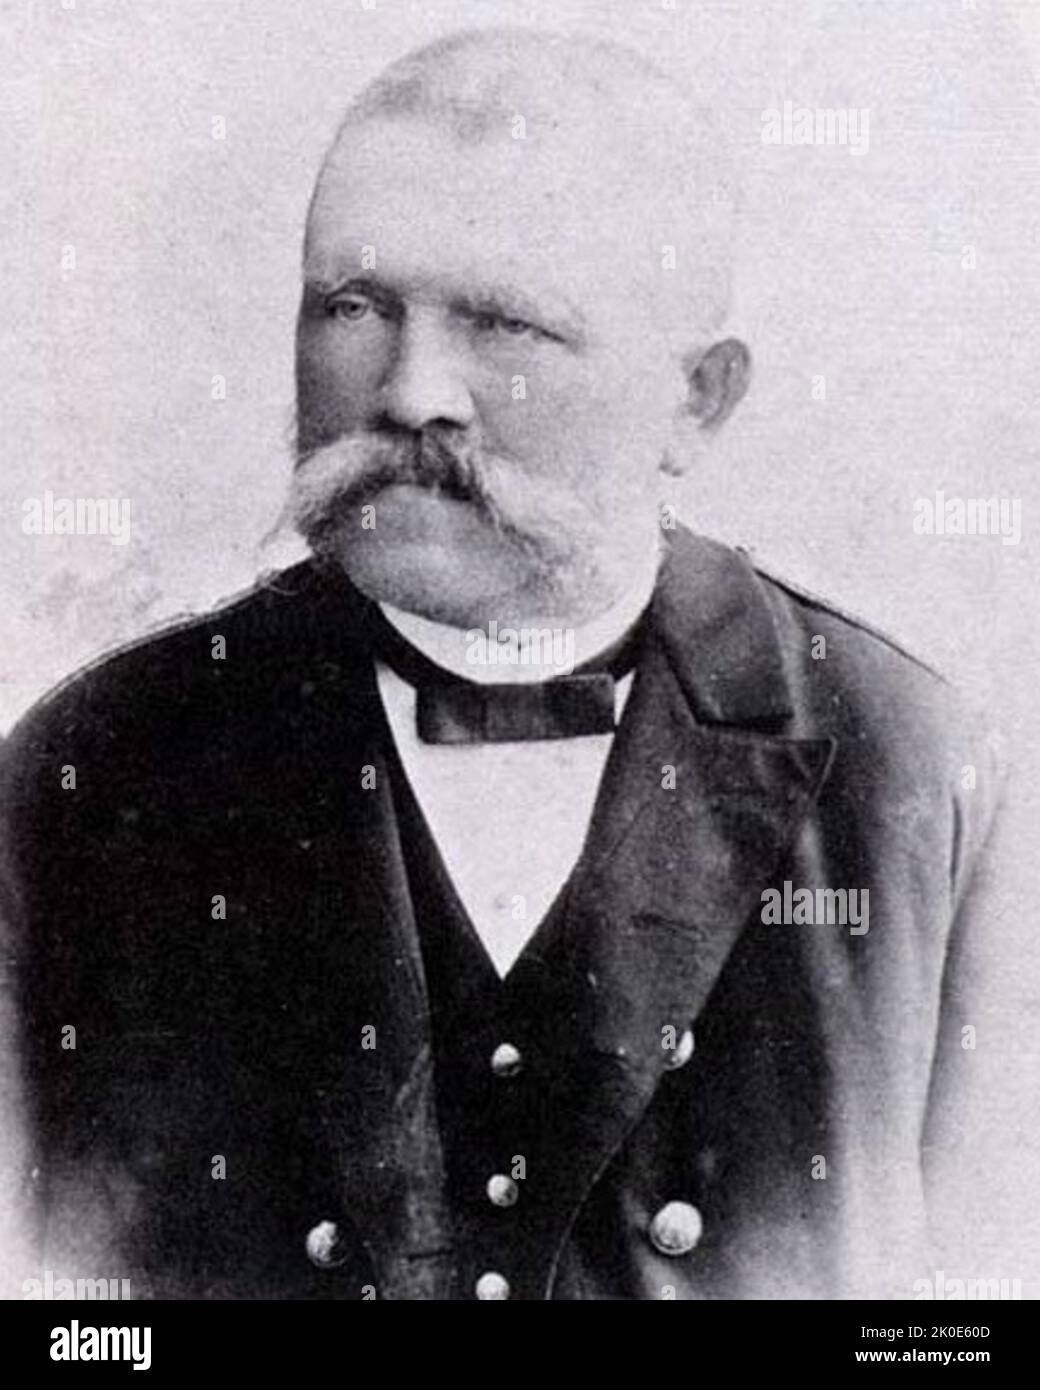 Alois Hitler (1837 - 1903), österreichischer Beamter im Zolldienst und Vater von Adolf Hitler, Diktator von Nazi-Deutschland. Stockfoto